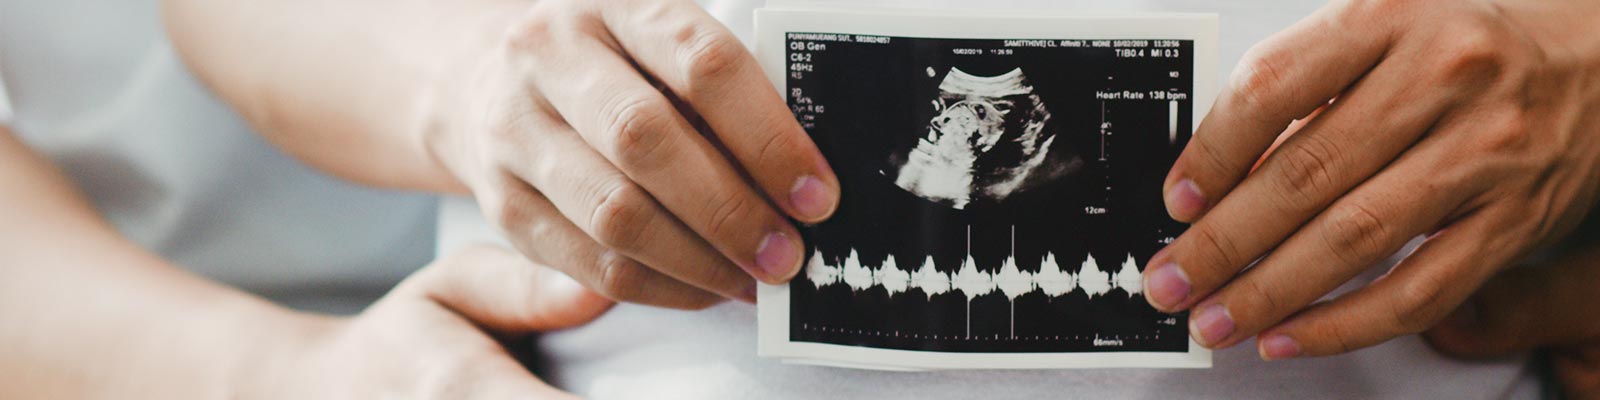 Diagnóstico y Tratamiento de Embarazos de Alto Riesgo